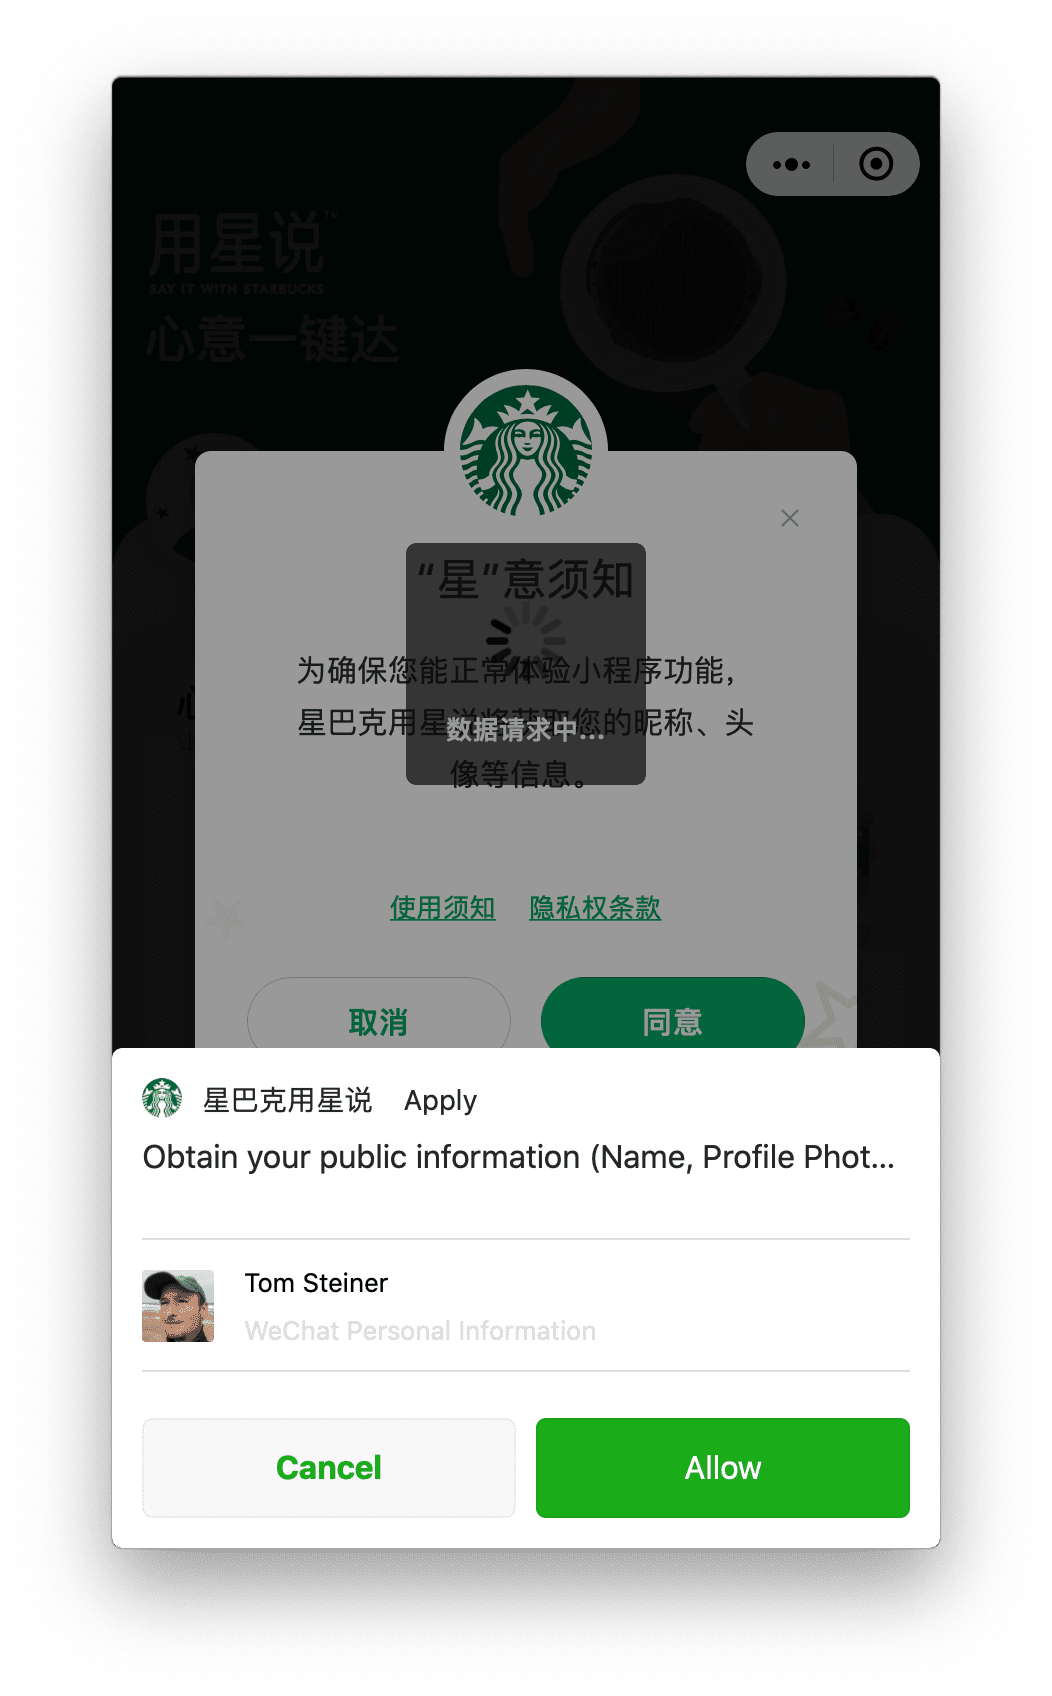 Aplikasi mini Starbucks yang berjalan di macOS meminta izin profil pengguna, yang dapat diberikan pengguna melalui perintah yang ditampilkan di bagian bawah.